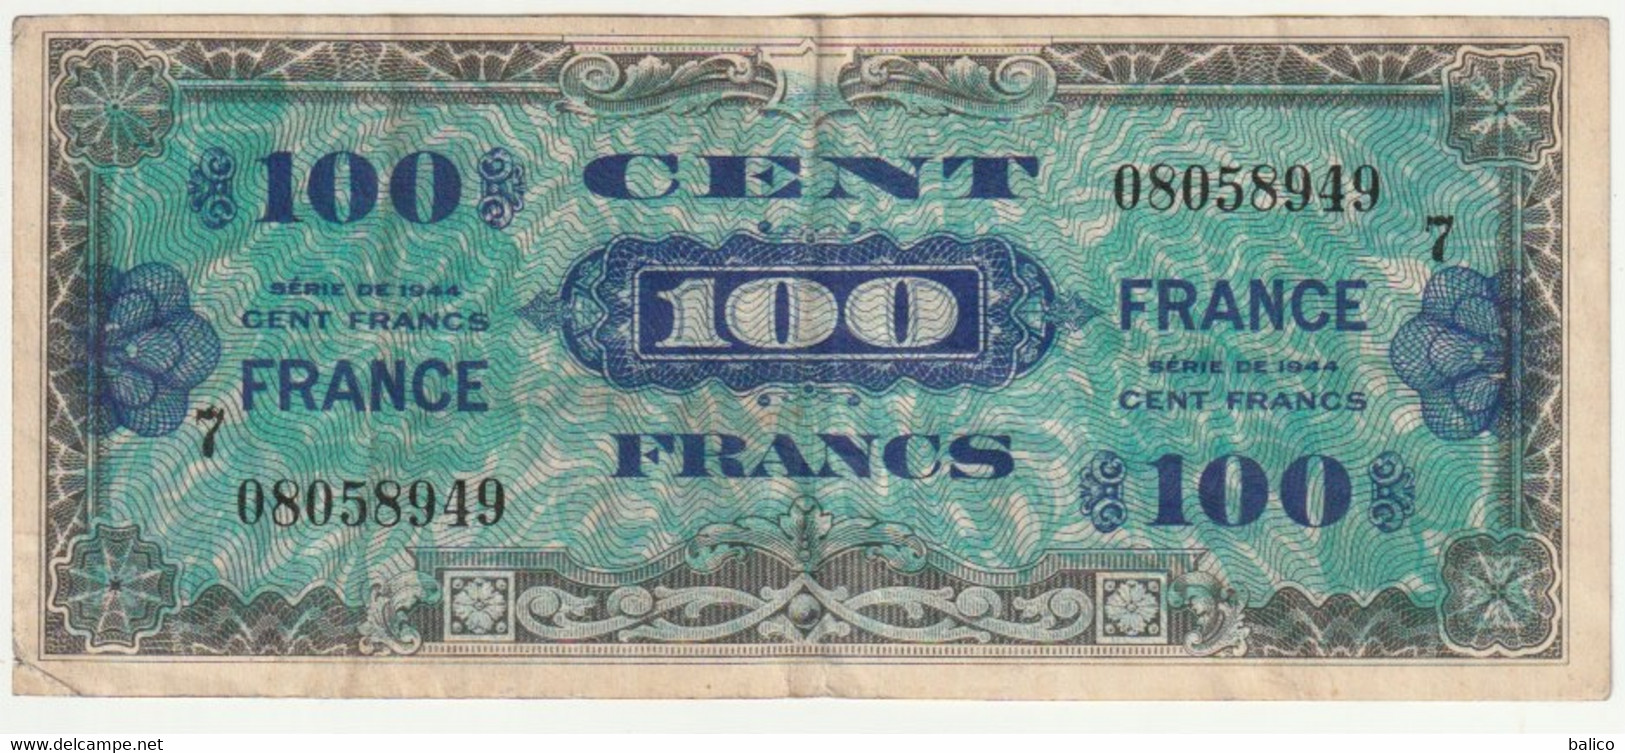 France, 100 Francs   1944   N° 08058949 - 1944 Flagge/Frankreich